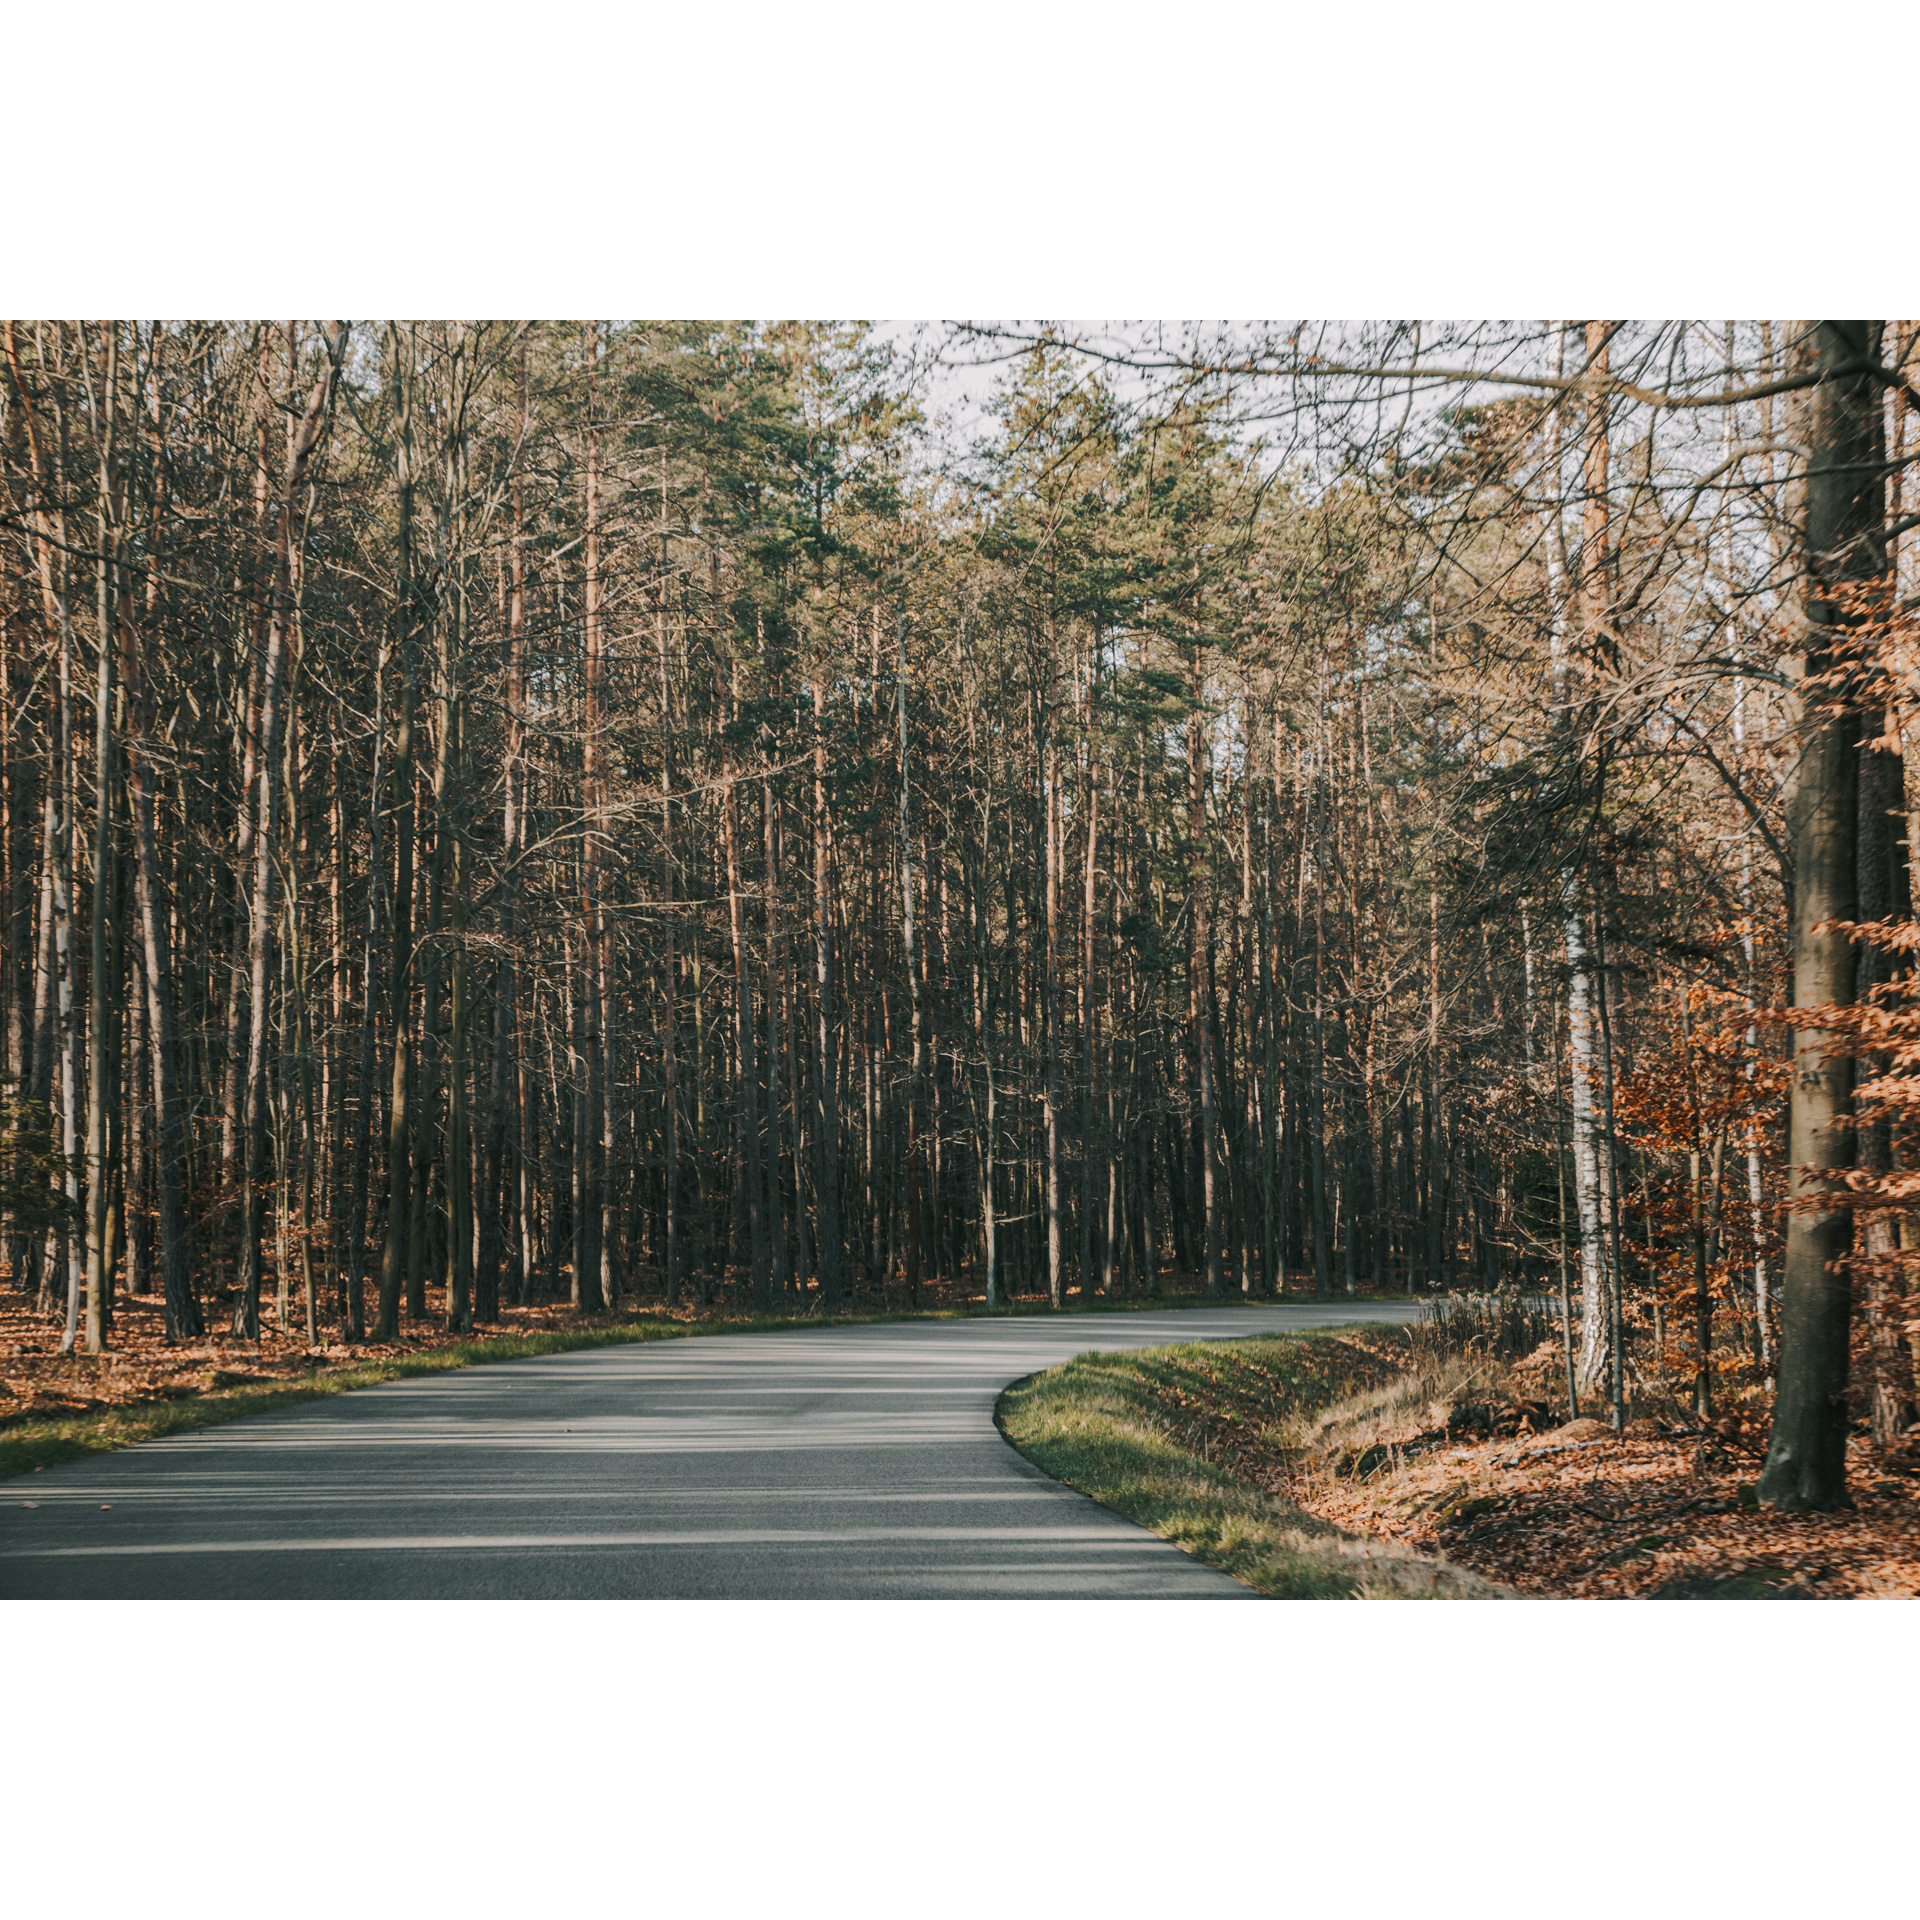 Leśna asfaltowa droga skręcająca w prawo pośród wysokich iglastych drzew